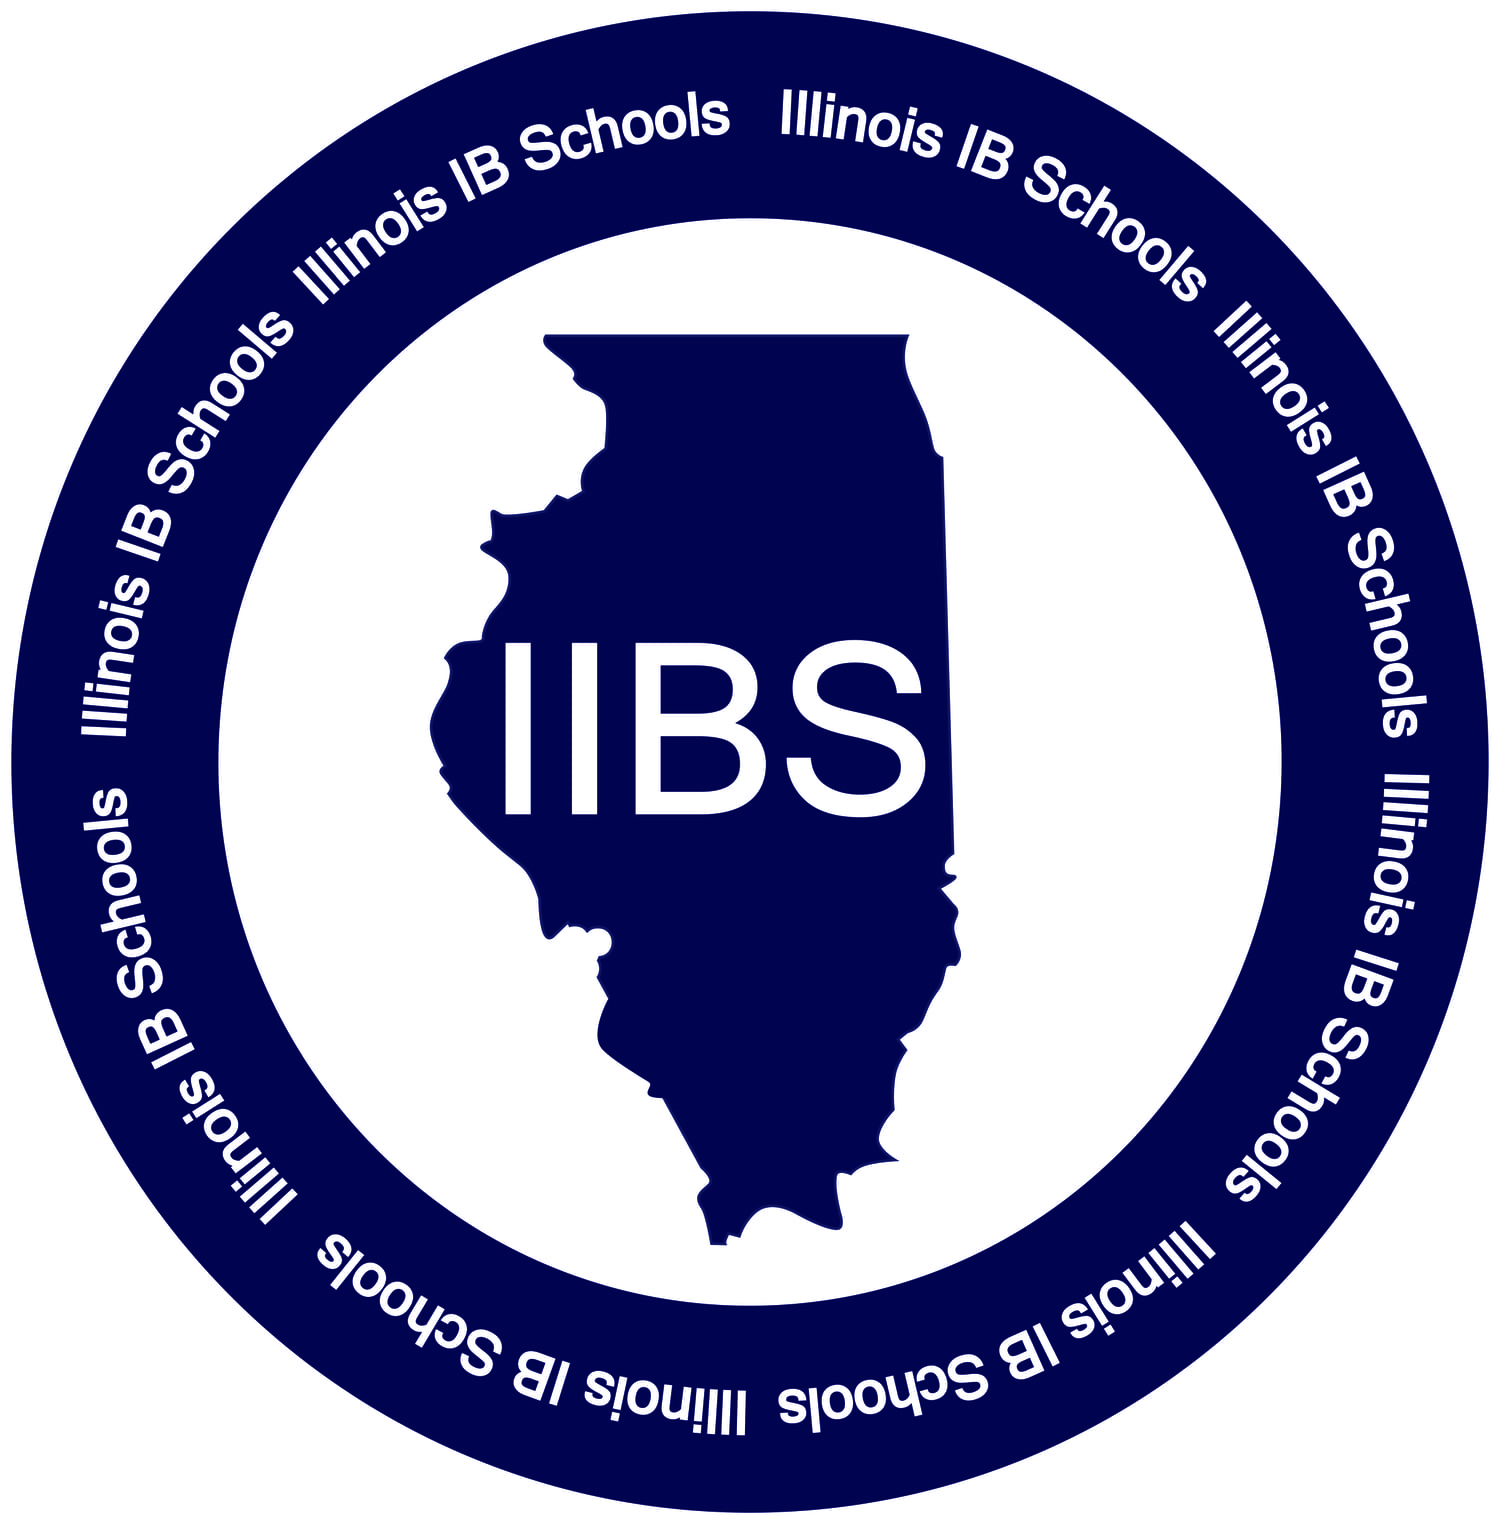 Illinois IB Schools